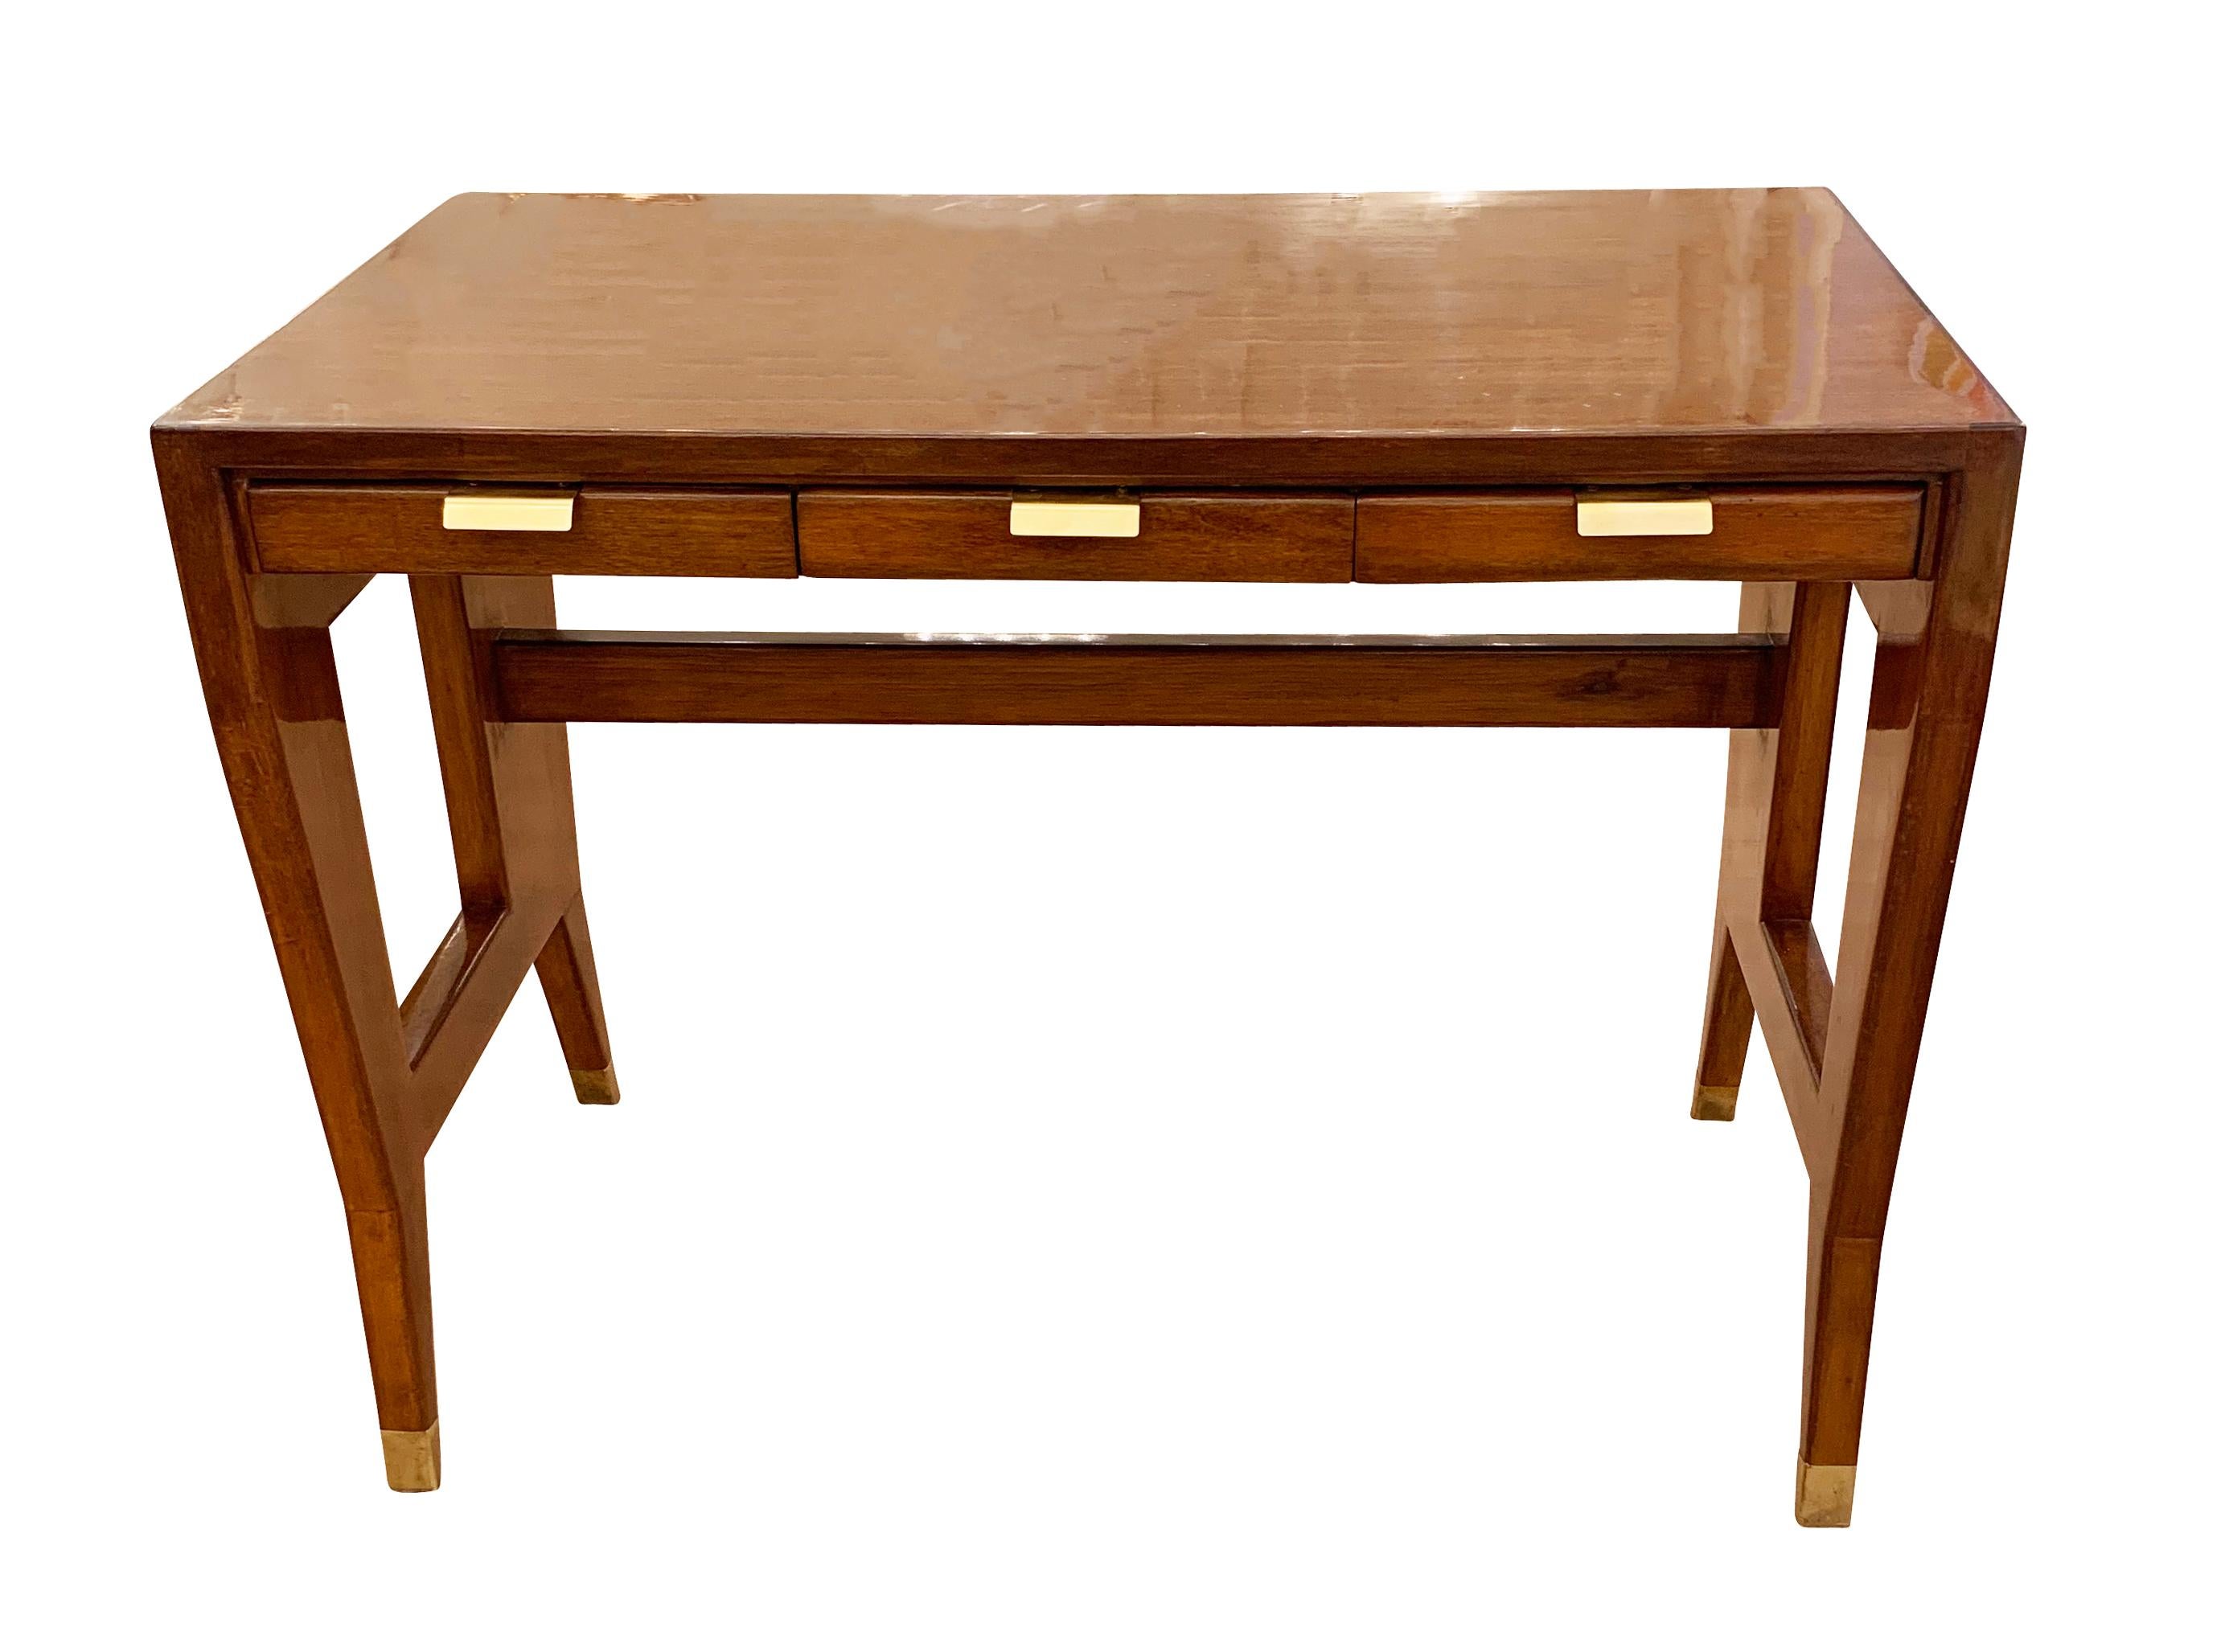 Ikonischer Schreibtisch aus den 1950er Jahren, entworfen von Gio Ponti für BNL. Rahmen aus Nussbaumholz und Laminatplatte mit exquisiten Messingdetails an den Griffen und Füßen.

Zustand: Ausgezeichneter Vintage-Zustand, leichte